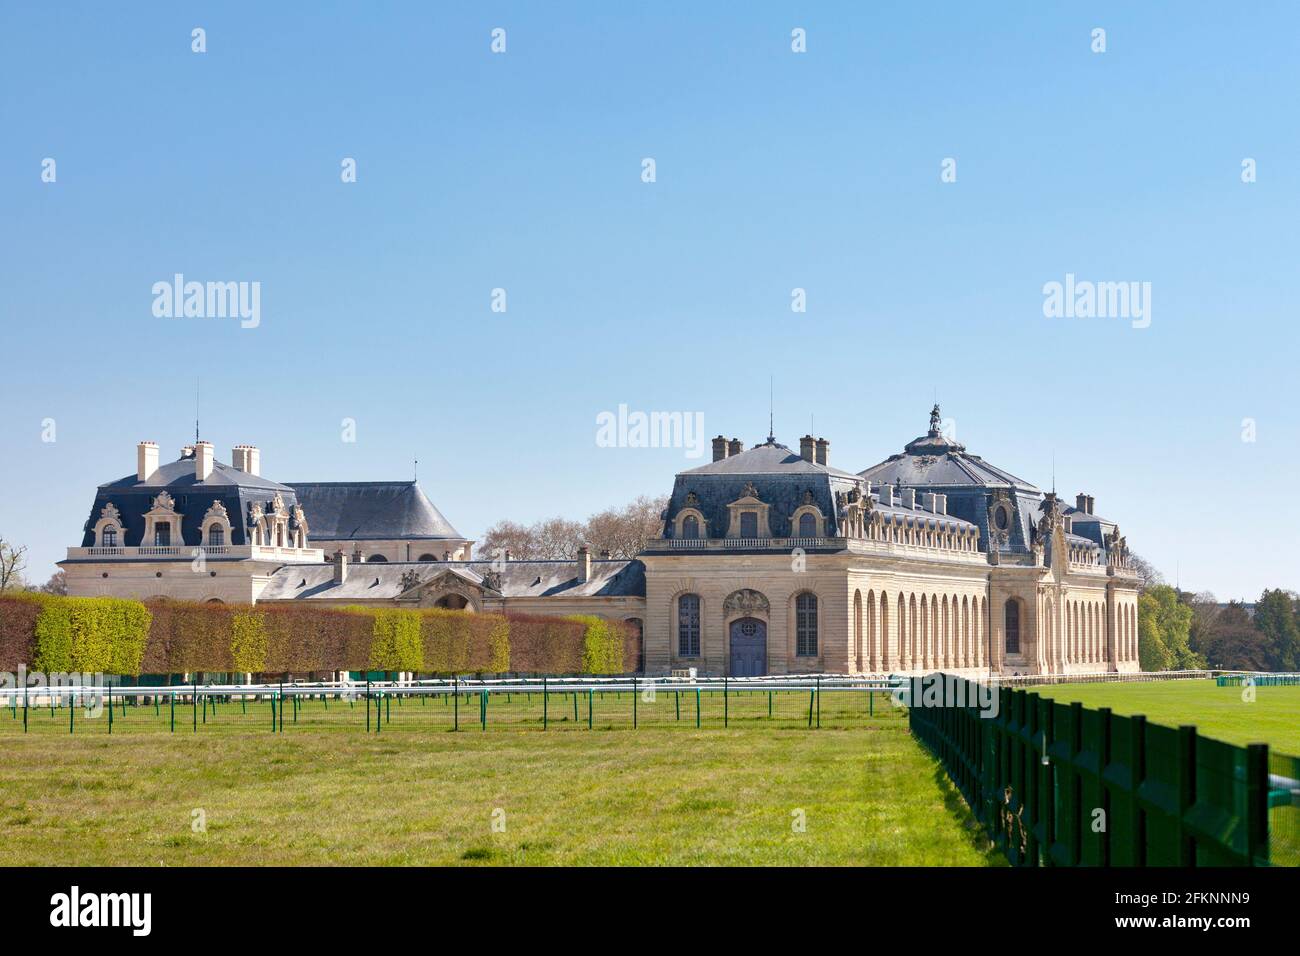 Chantilly, Francia - 25 2021 de abril: Los Grandes Establos, sede del Museo Vivo del Caballo (francés: Musée Vivant du Cheval). Foto de stock